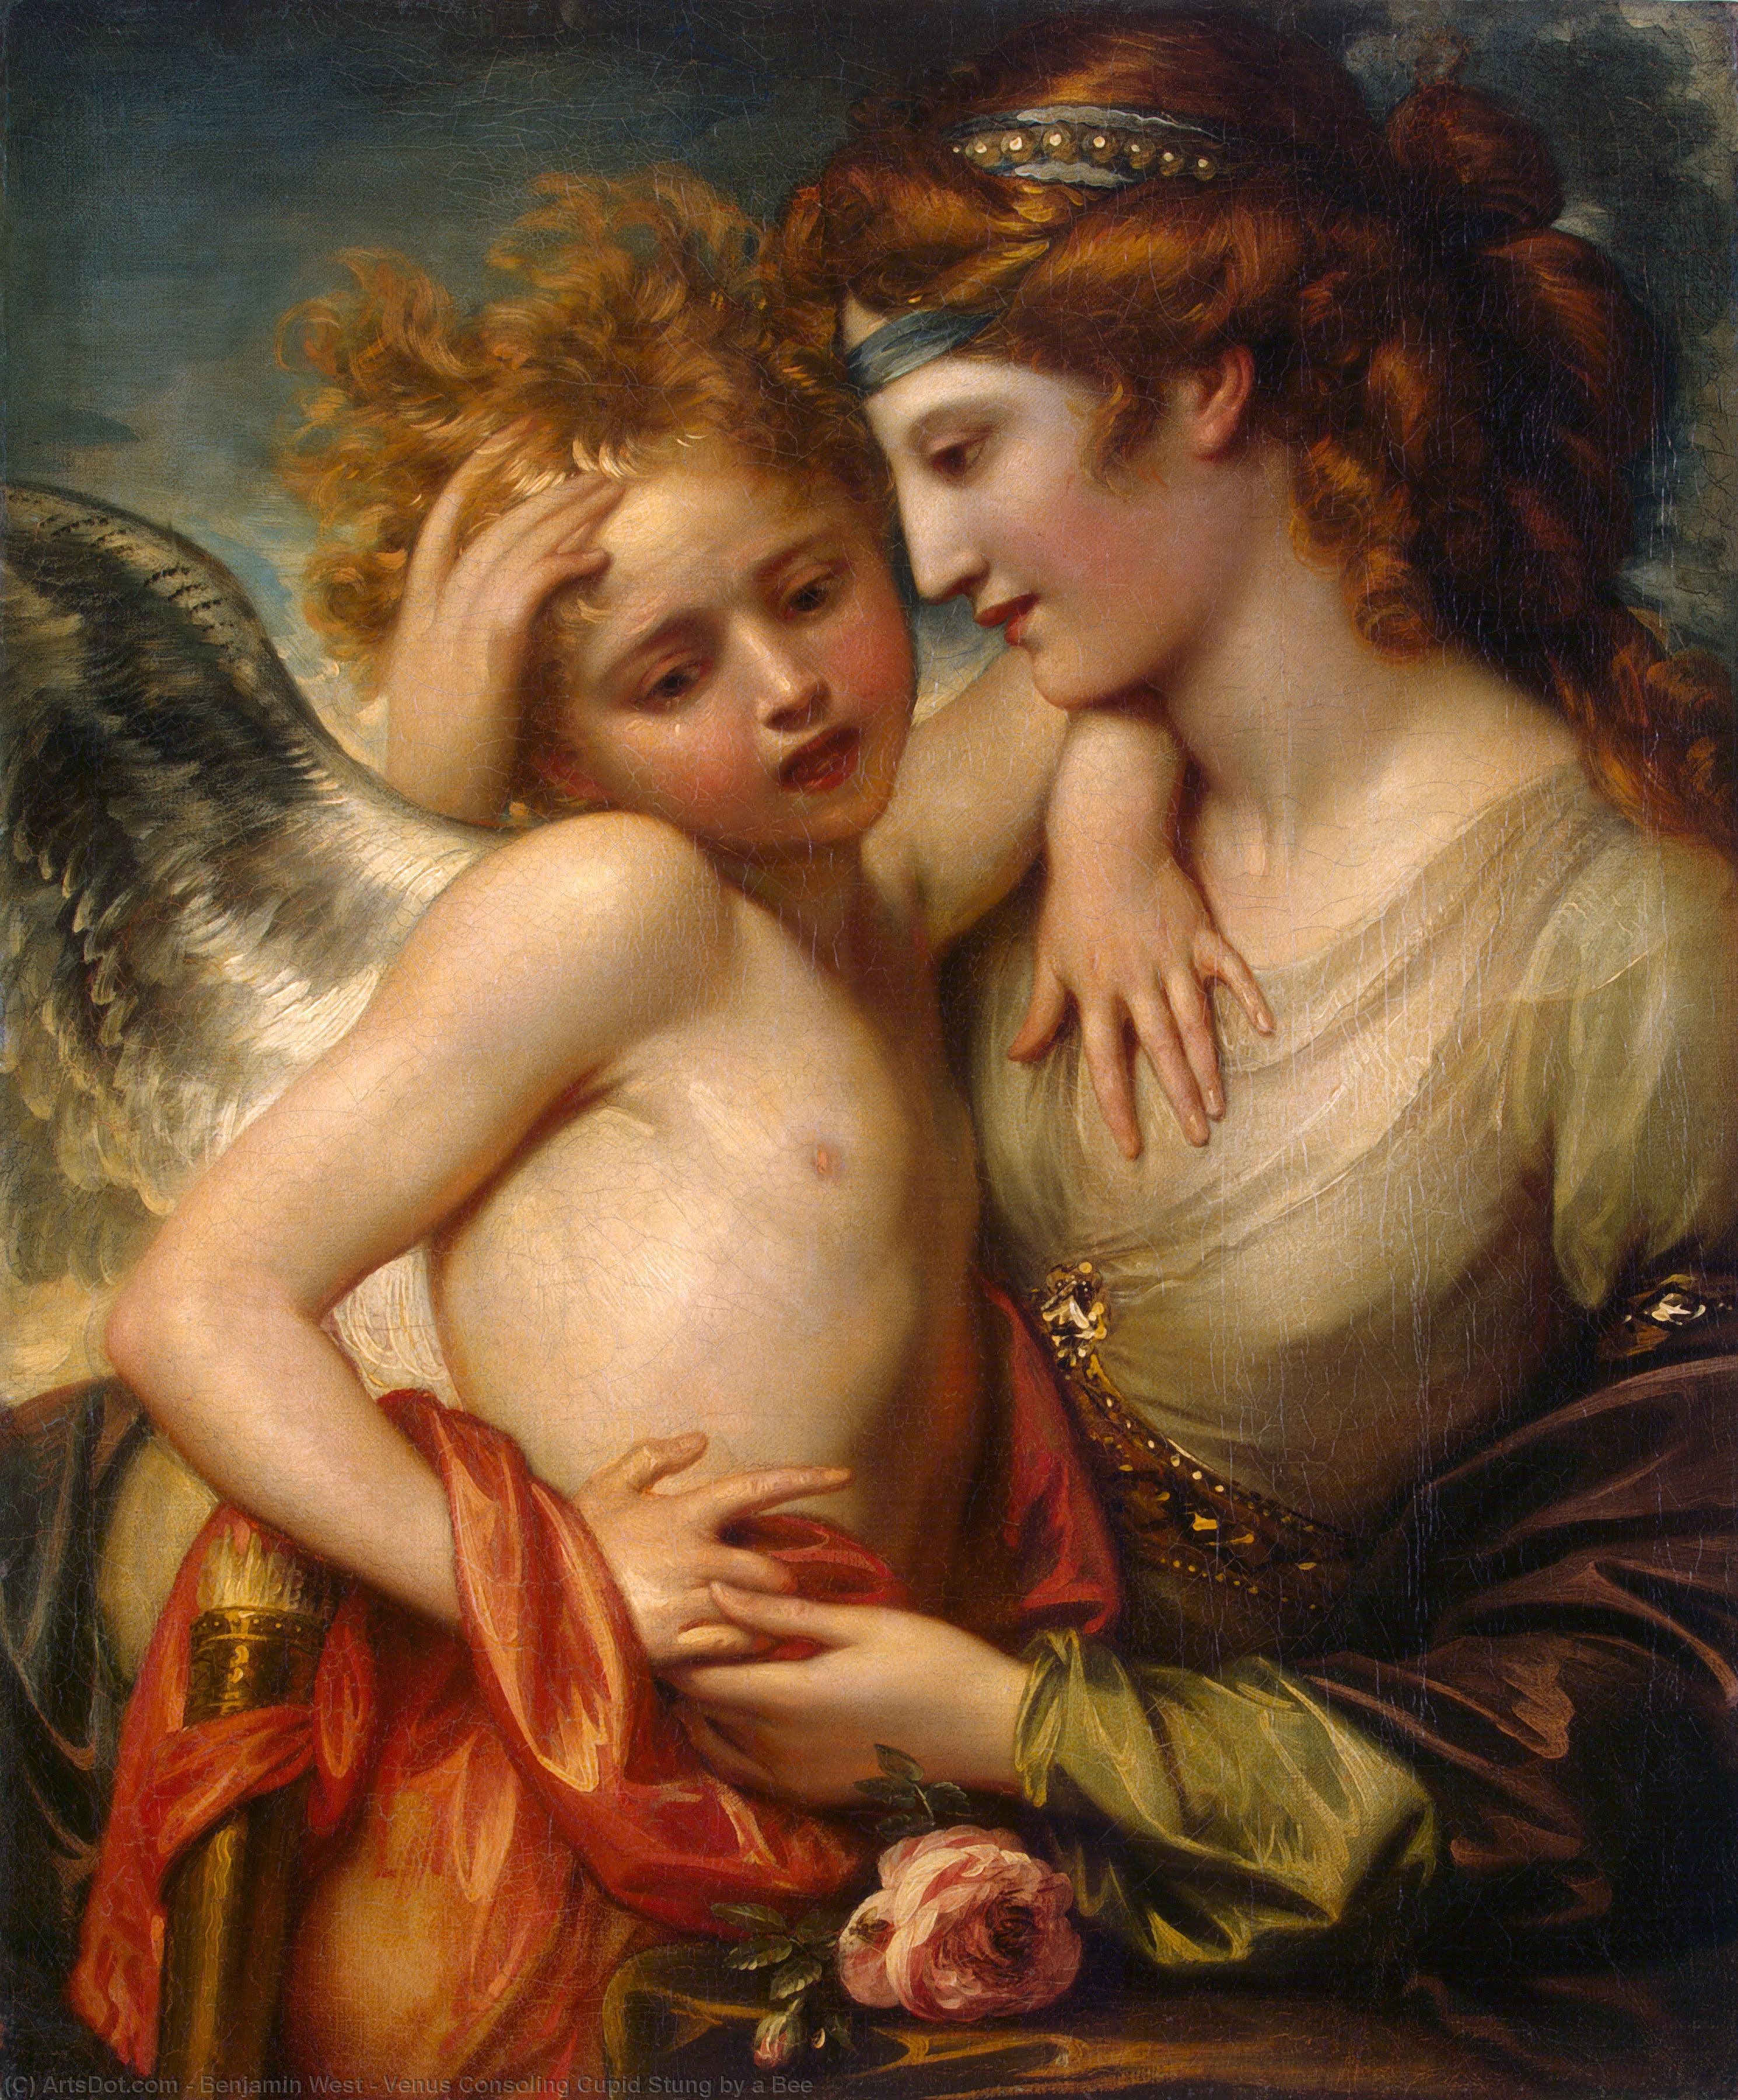 WikiOO.org - Енциклопедия за изящни изкуства - Живопис, Произведения на изкуството Benjamin West - Venus Consoling Cupid Stung by a Bee